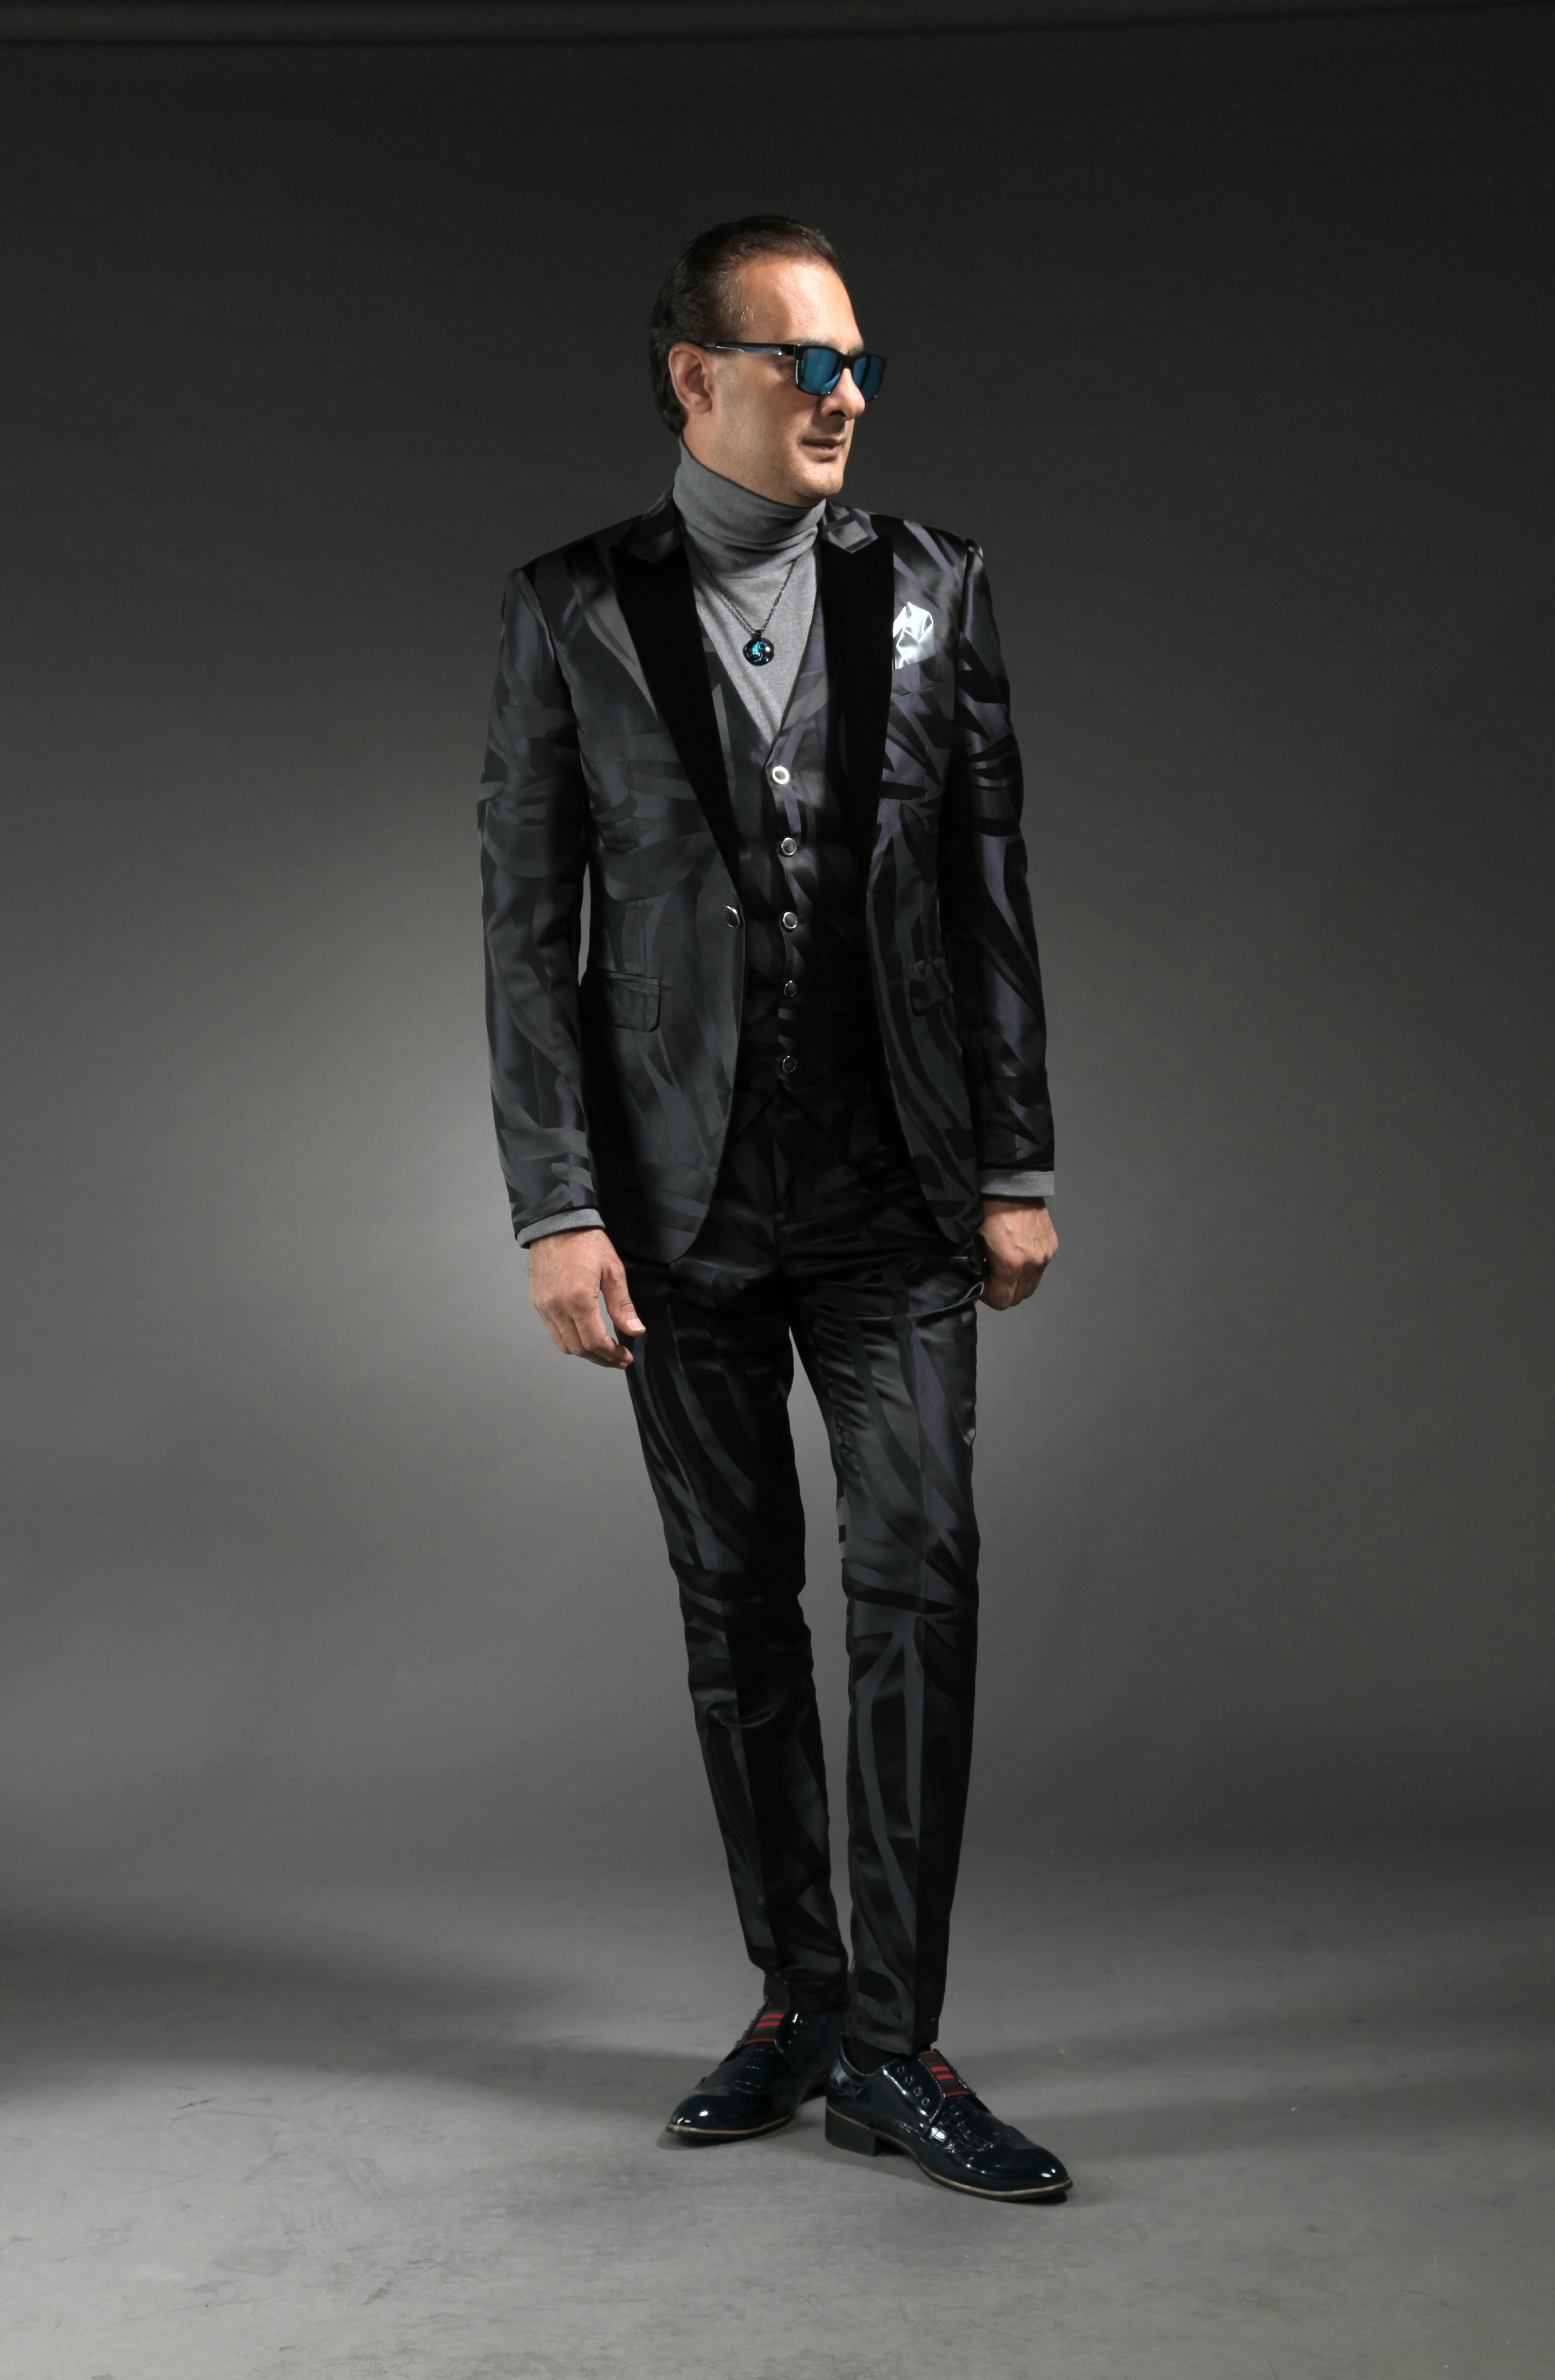 MST-5010-02-rent_rental_hire_tuxedo_suit_black_tie_suit_designer_suits_shop_tailor_tailors_singapore_wedding